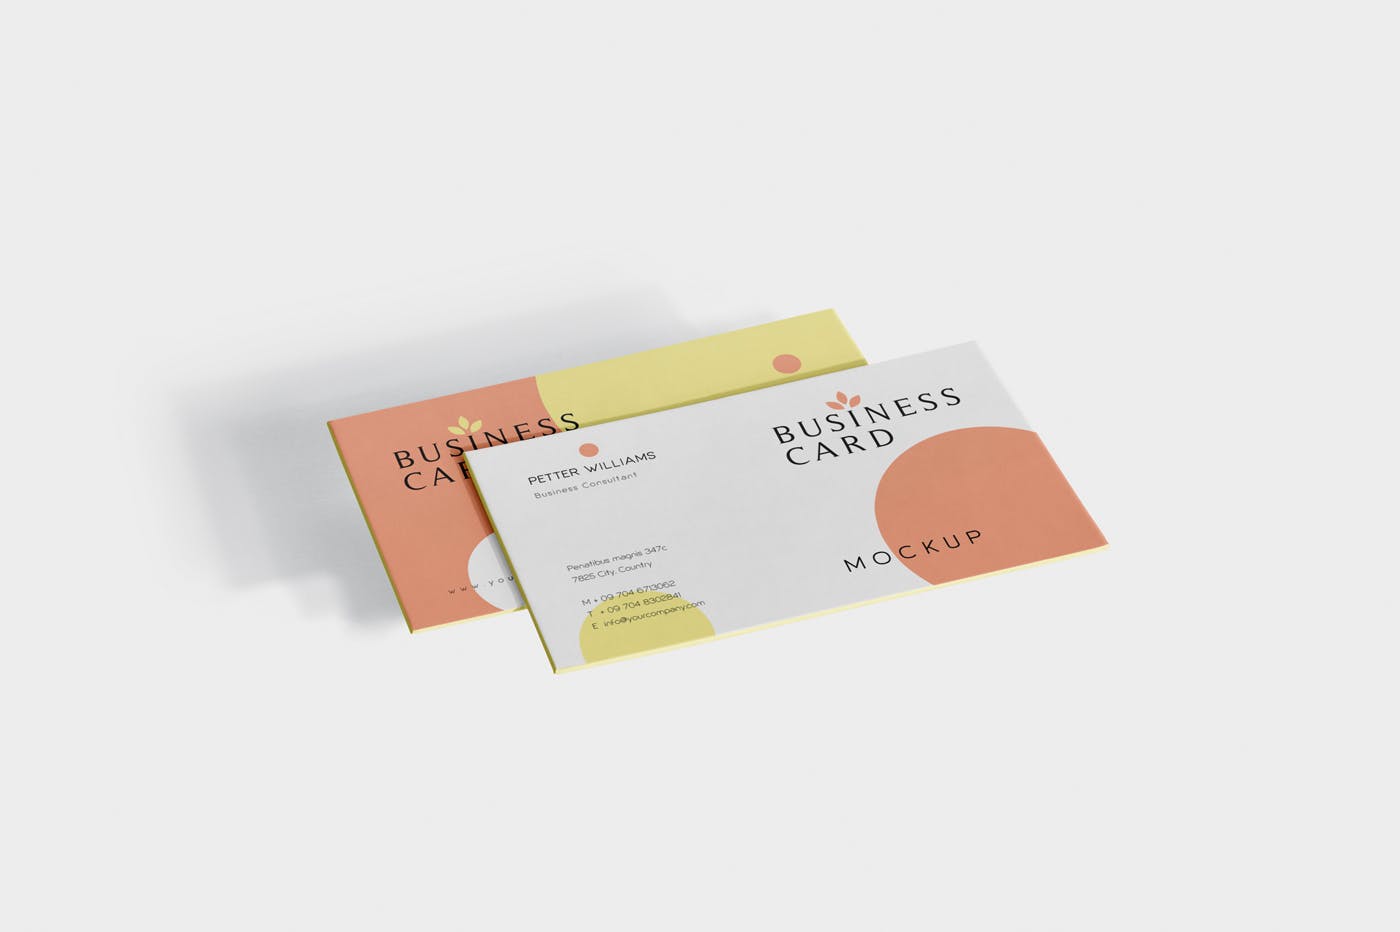 创意企业名片设计阴影效果图样机 Business Card